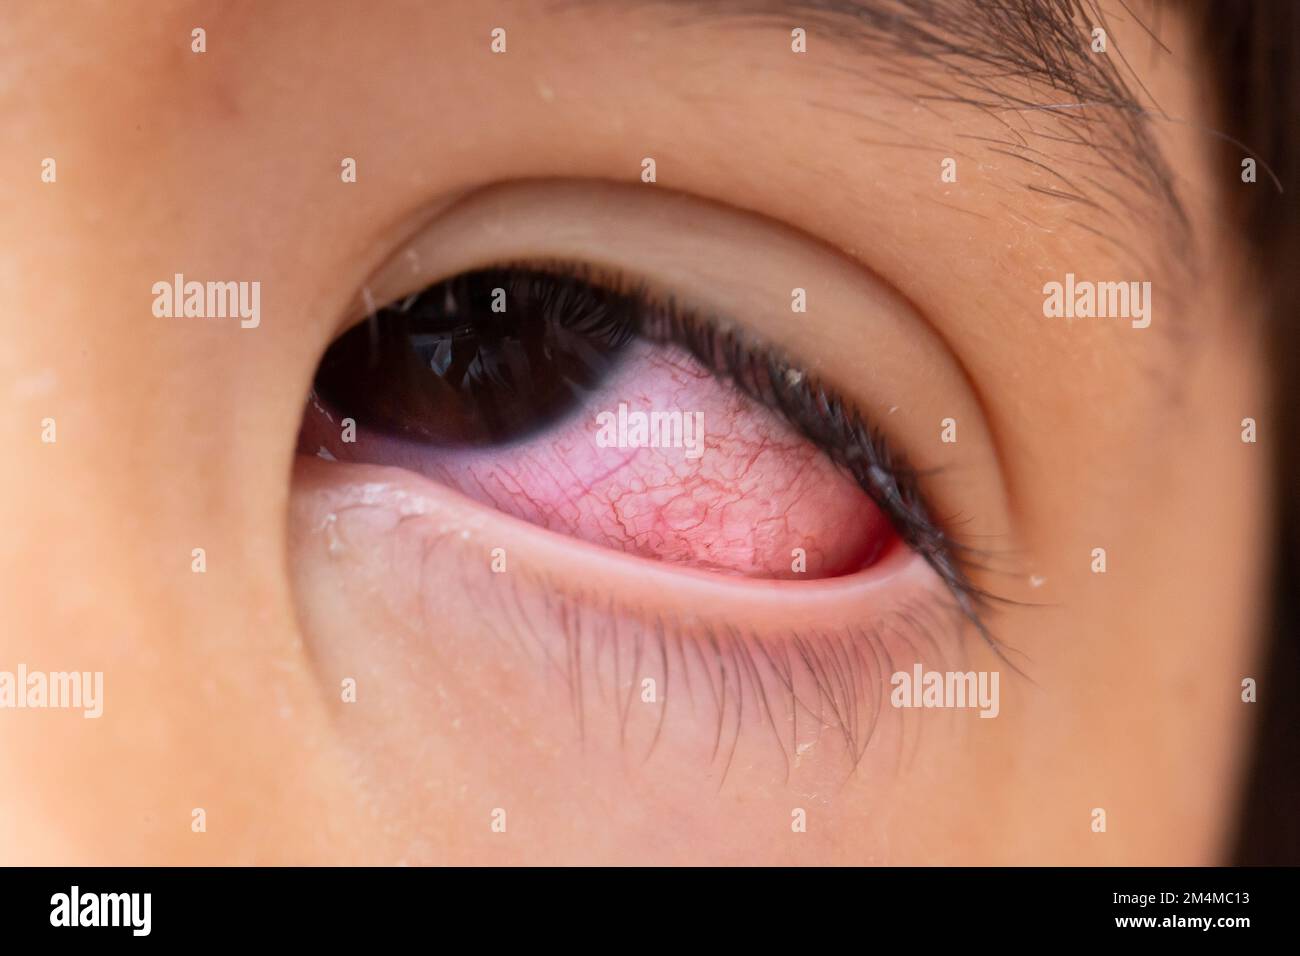 Macro d'un œil très rouge avec des caractéristiques orientales en raison de la conjonctivite. Sécheresse et rougeur de la sclère due à l'irritation Banque D'Images